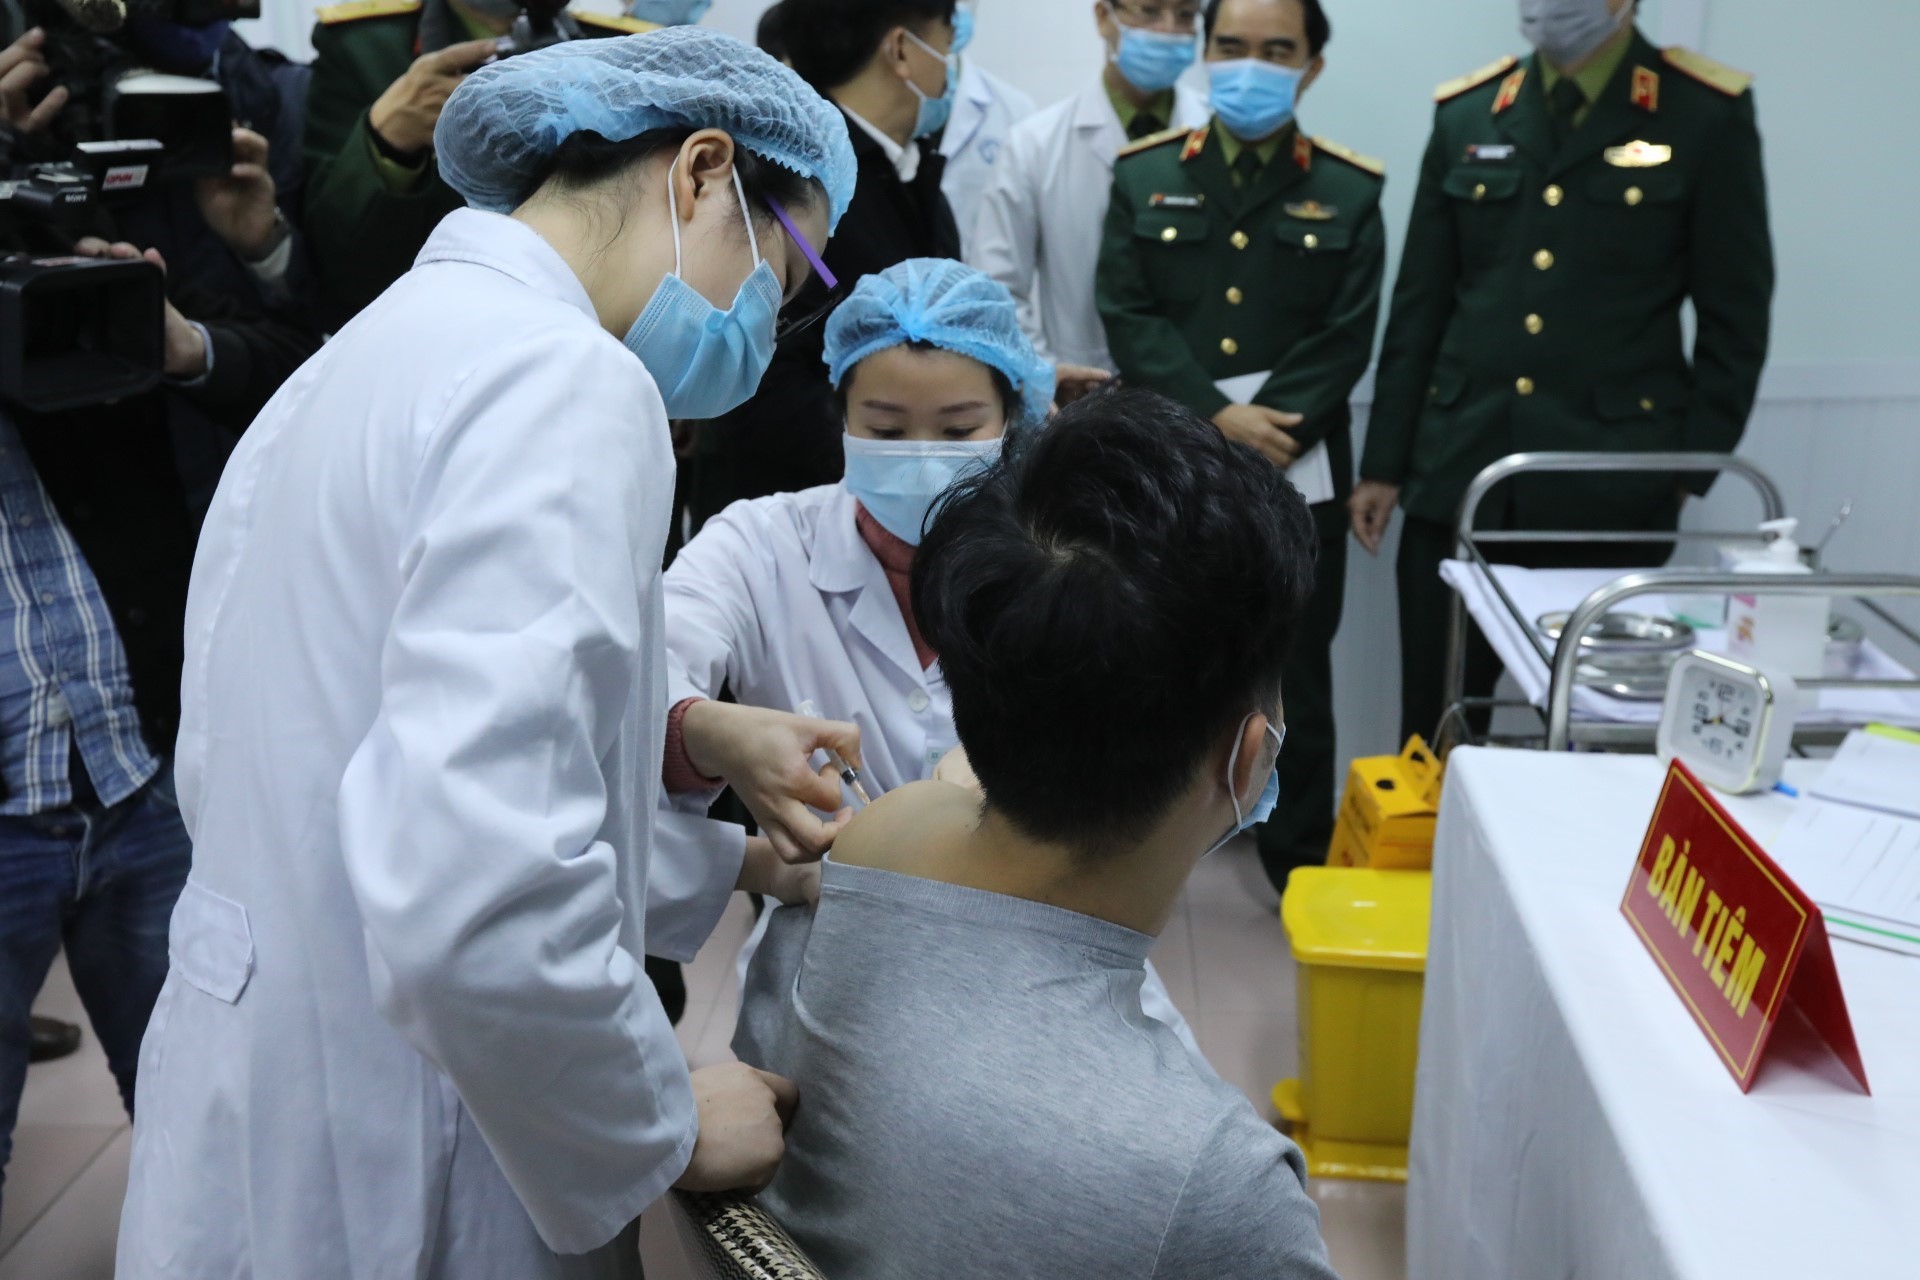  Первая инъекция вакцины против COVID-19 Nano Covax добровольцам во Вьетнаме. Интервал между 2 инъекциями - 28 дней. За добровольцами наблюдают в течение 56 дней для оценки эффективности, медицинское наблюдение за ними проводится в течение 6 месяцев с момента первой инъекции. (Фото: ВИА)   